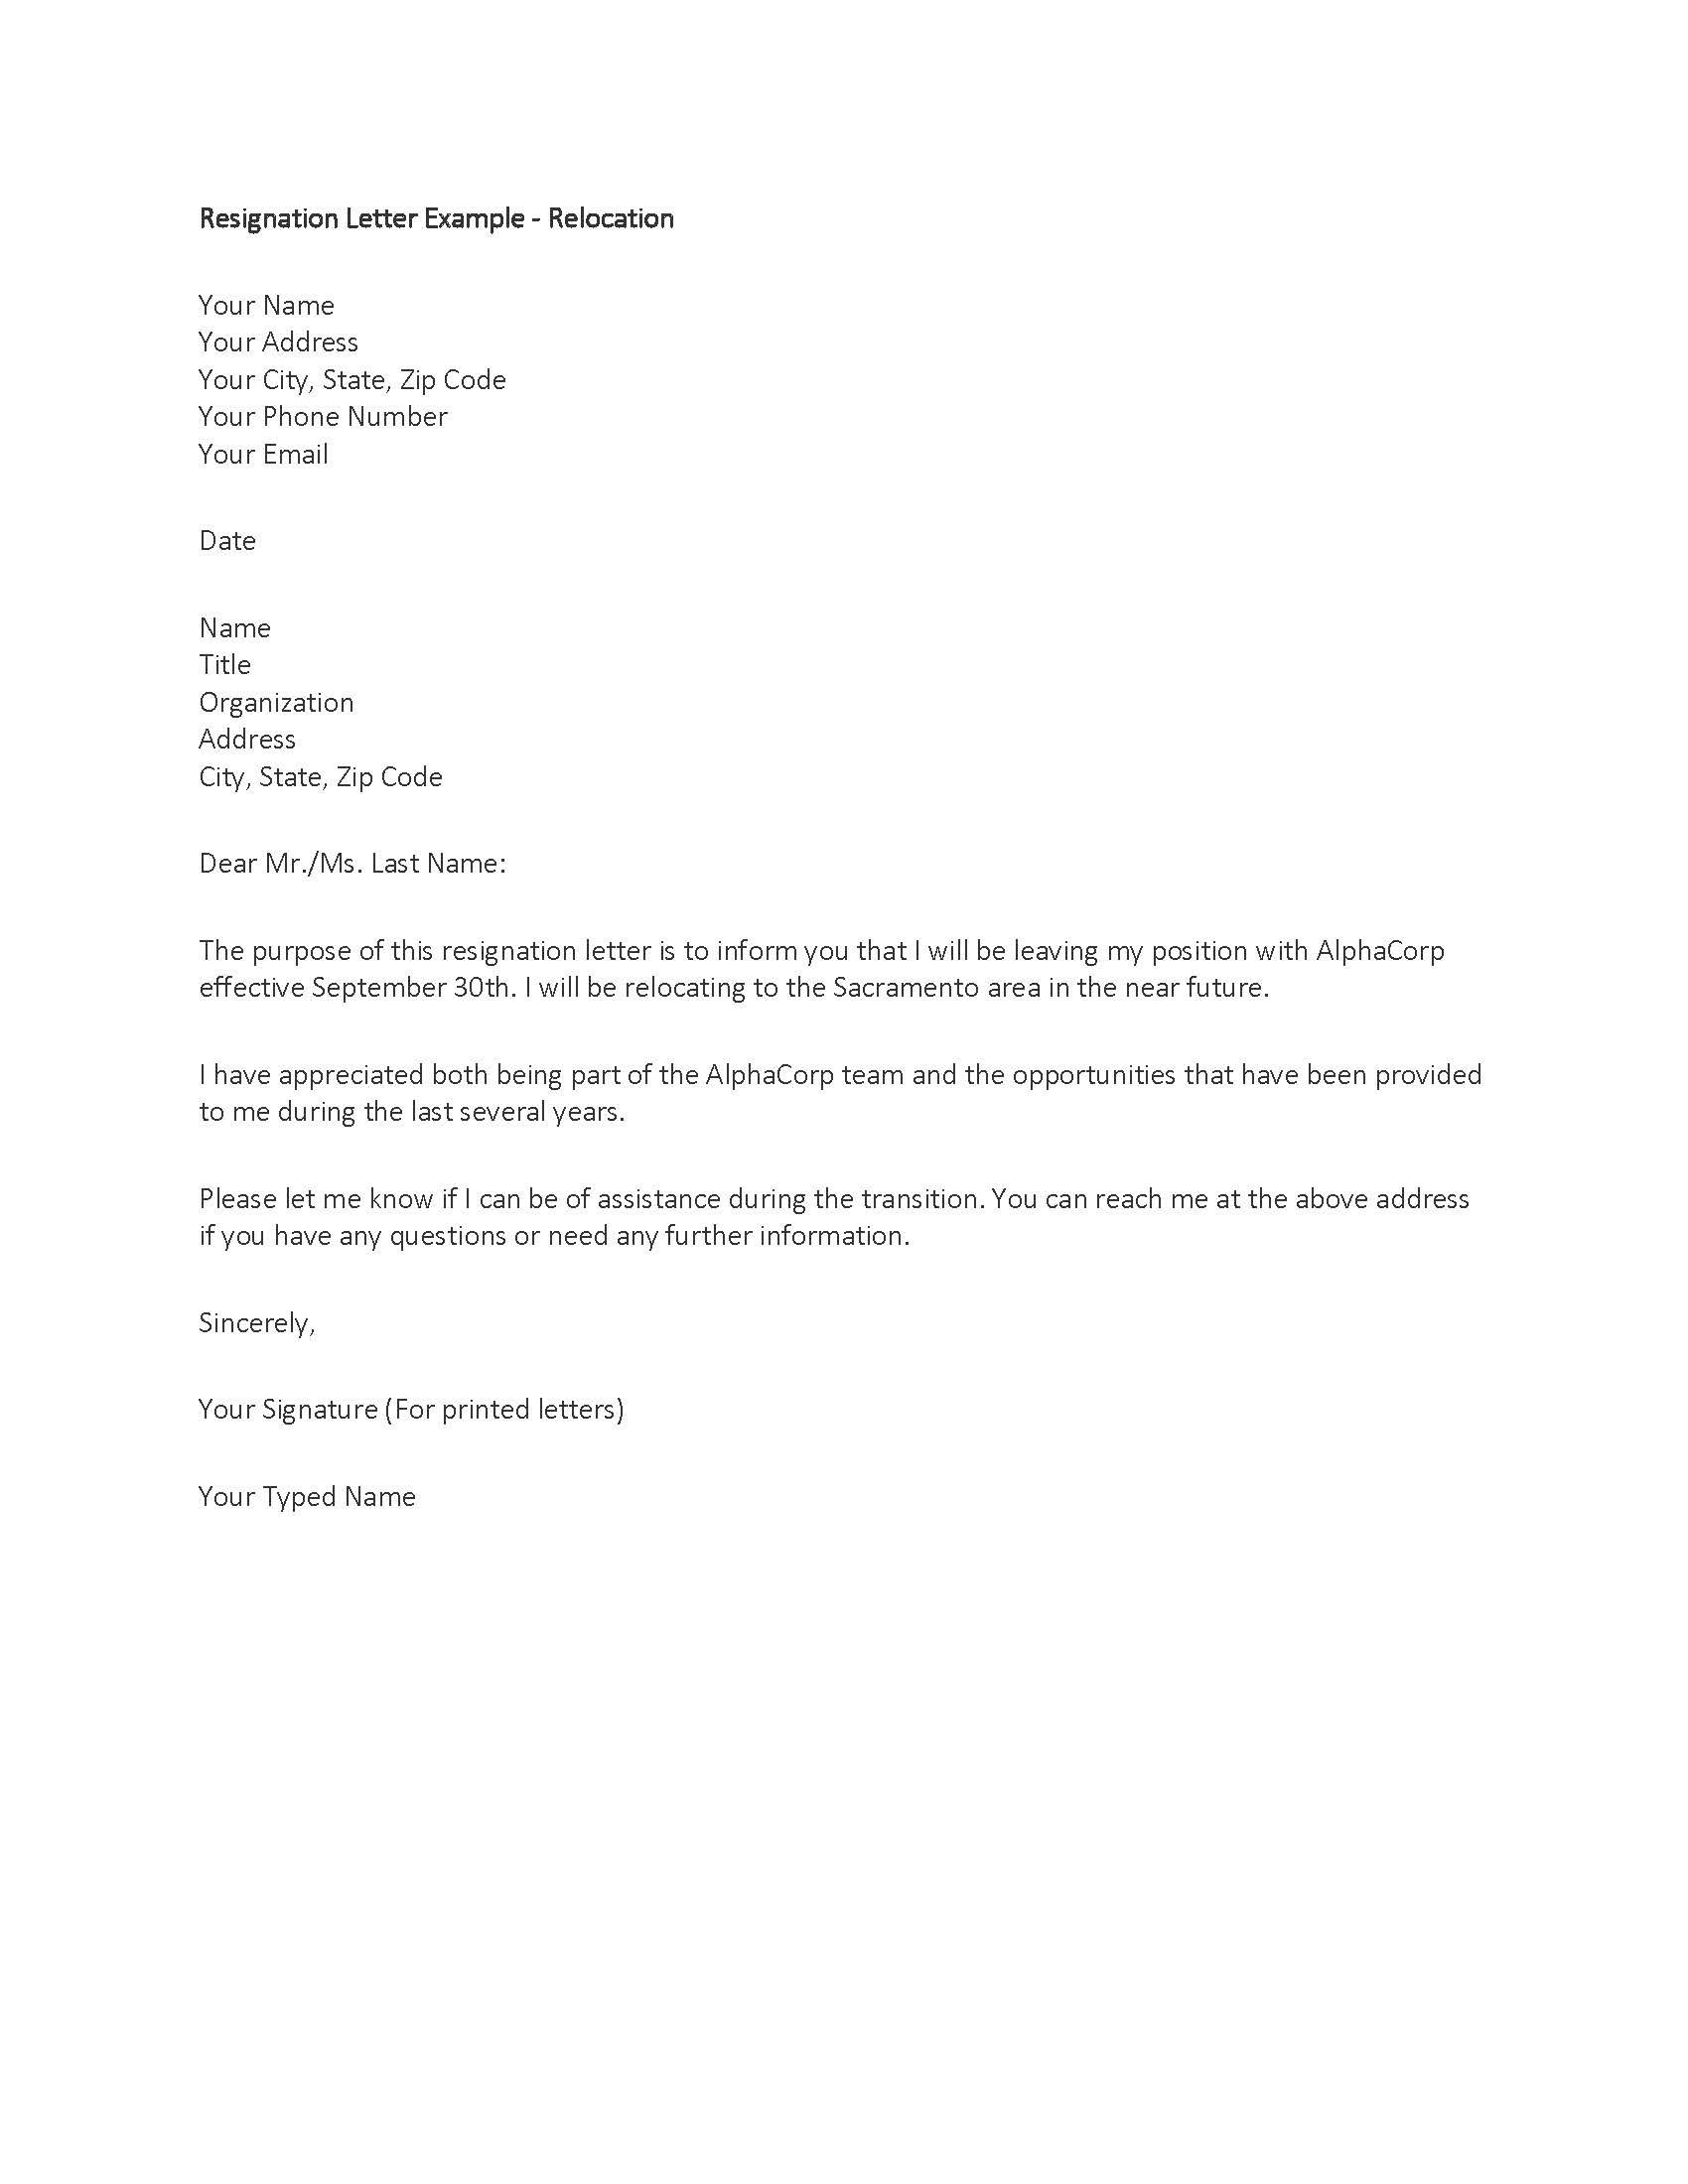 Letter Of Resignation Teacher Template - Resignation Letter Samplel 19rl03 Move Pinterest